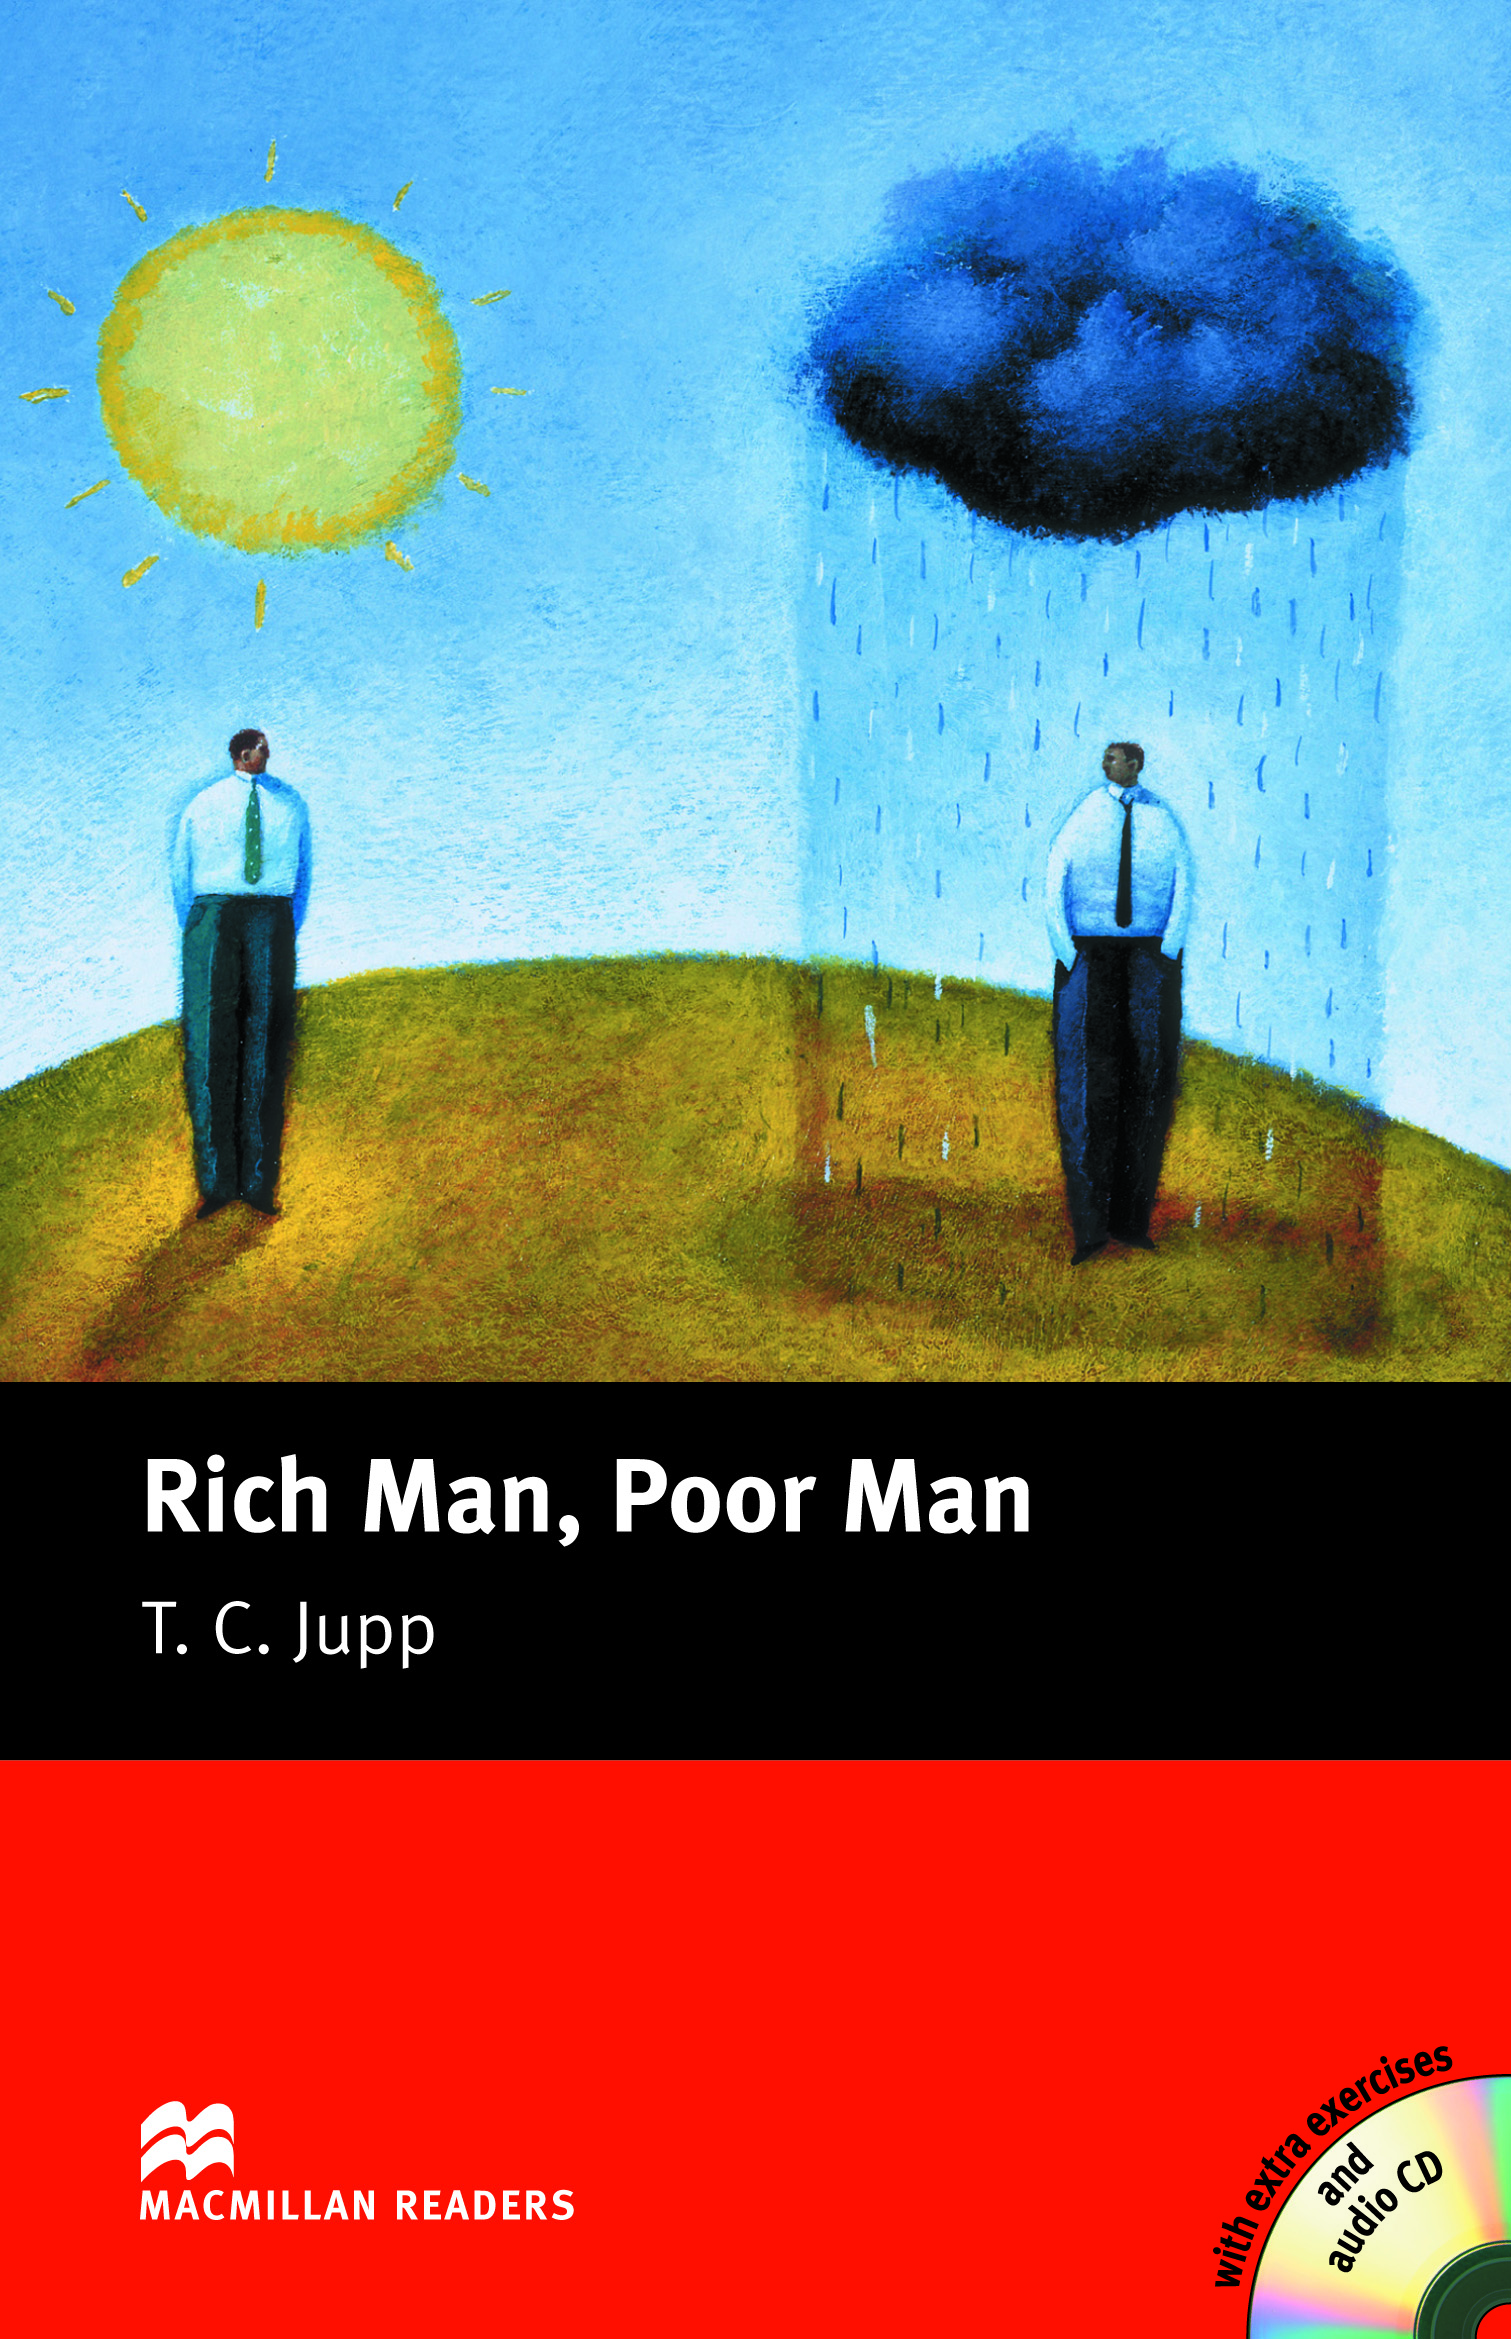 Rich Man Poor Man Card Game